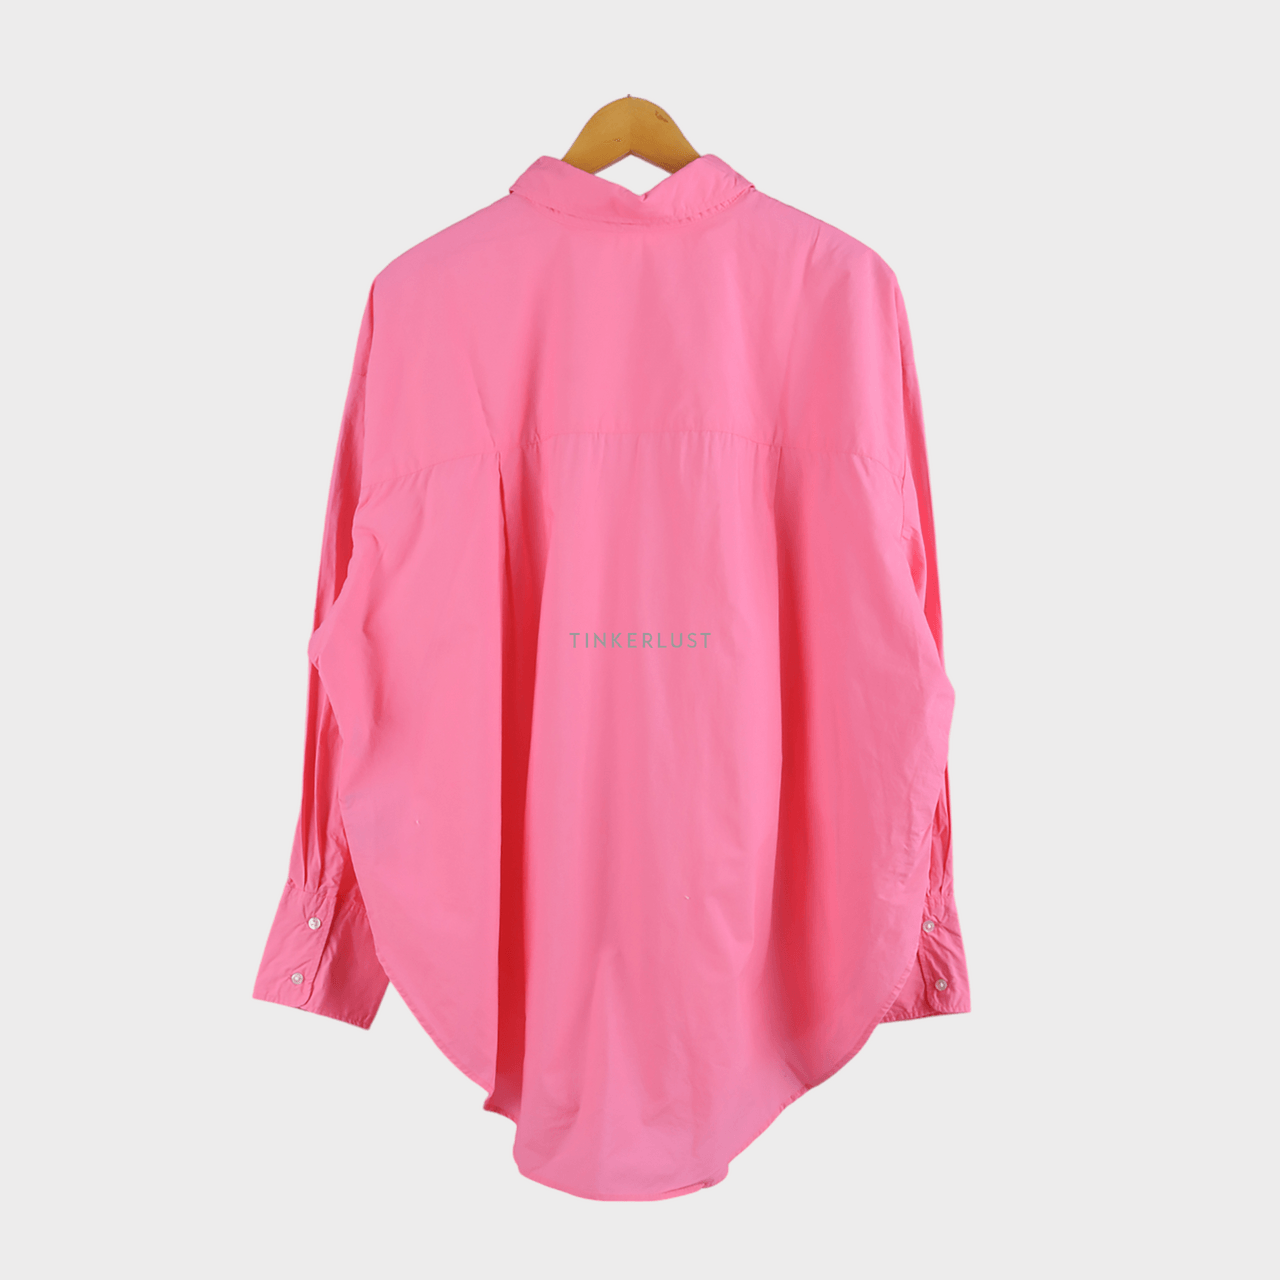 H&M Pink Shirt